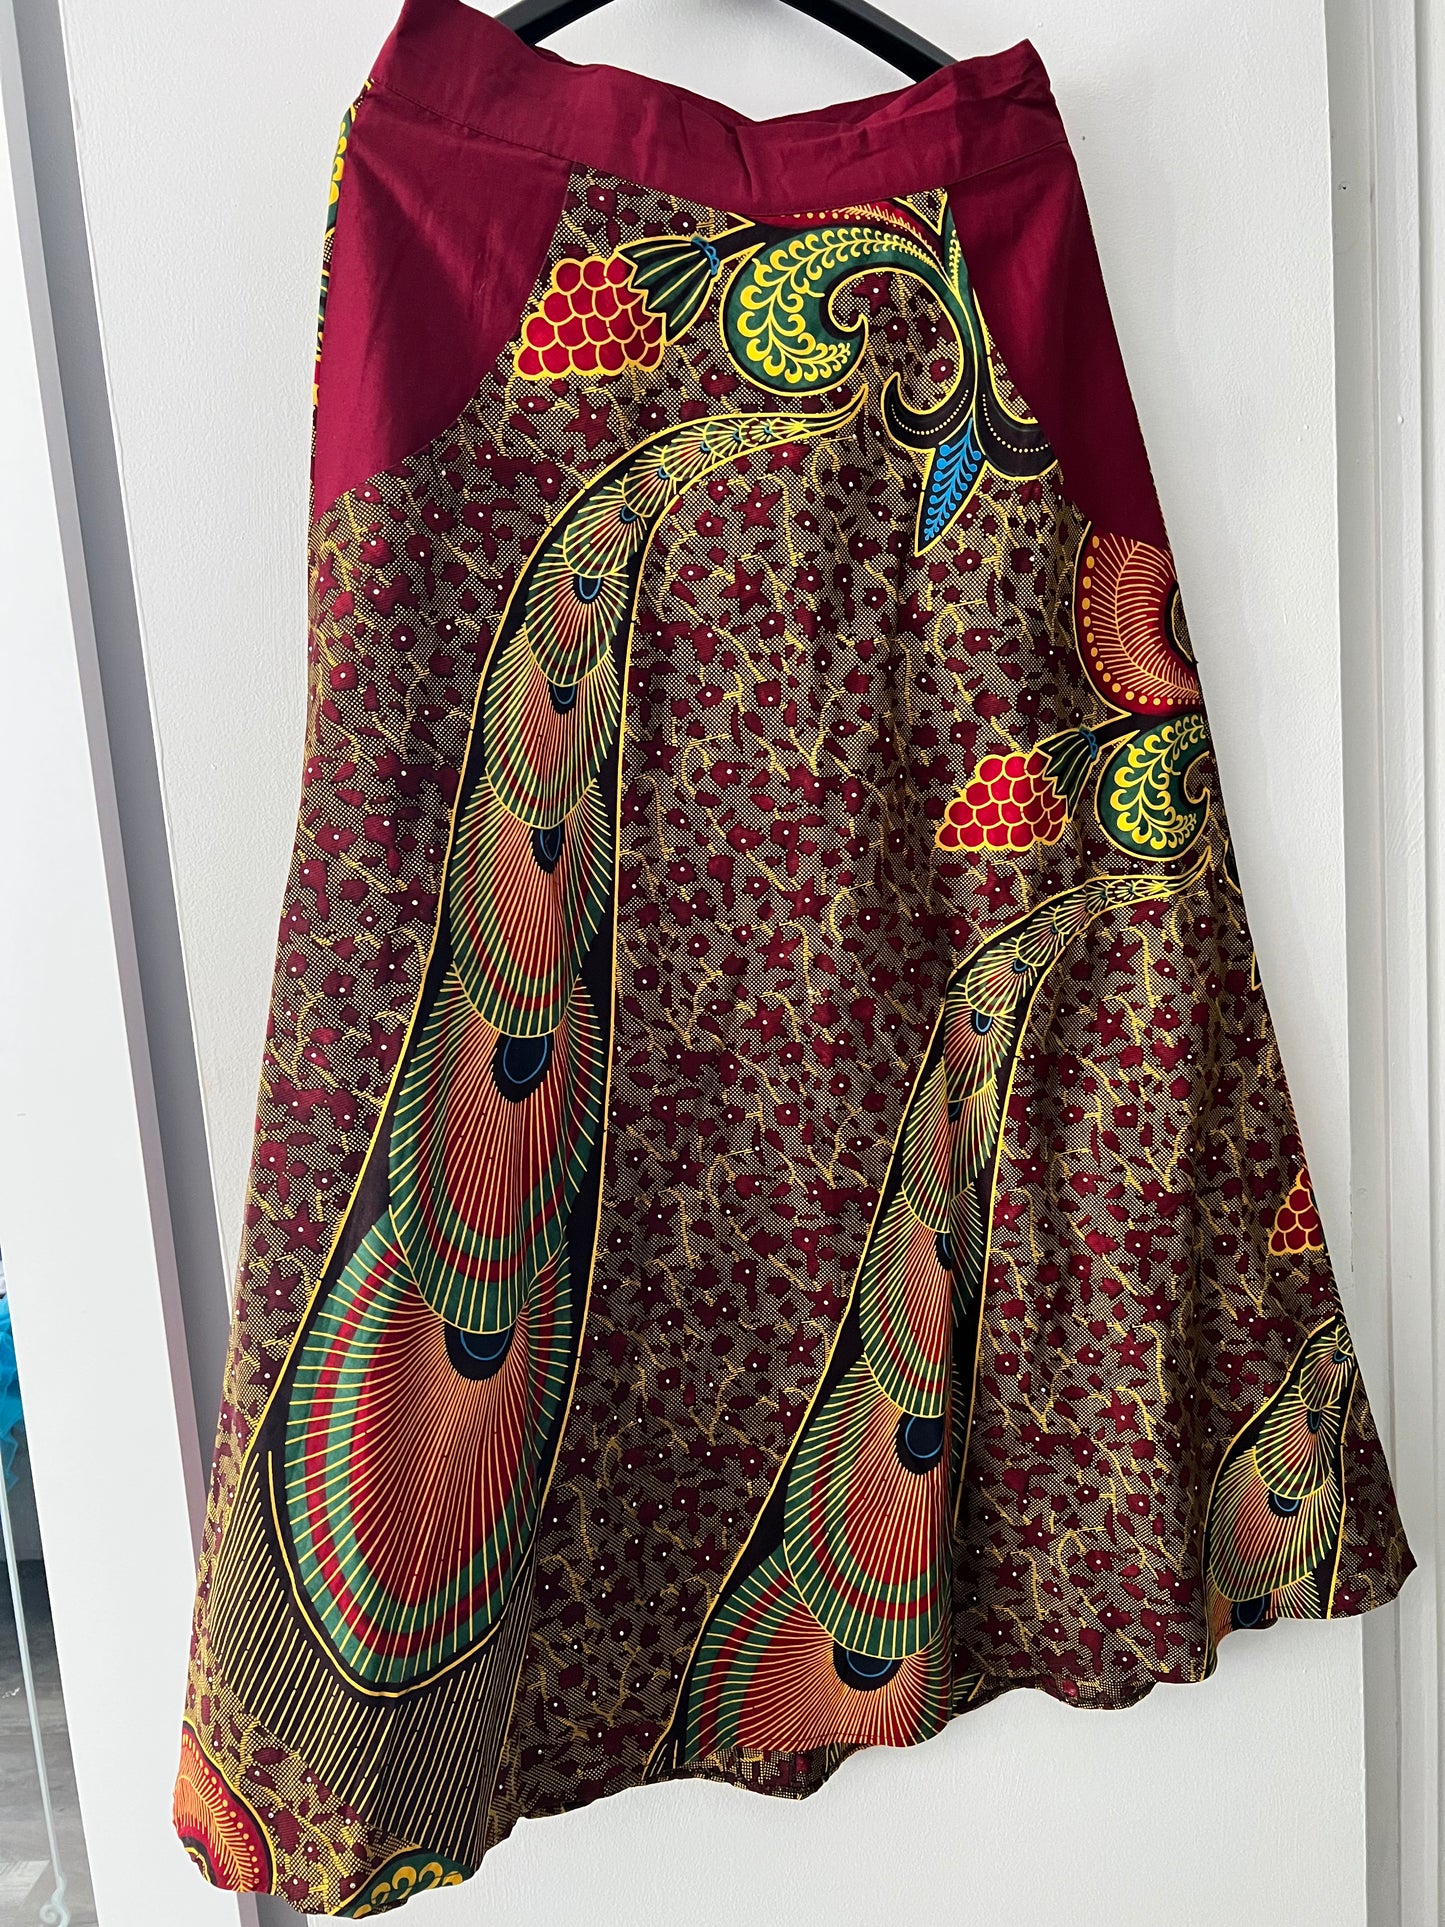 Peacock Skirt